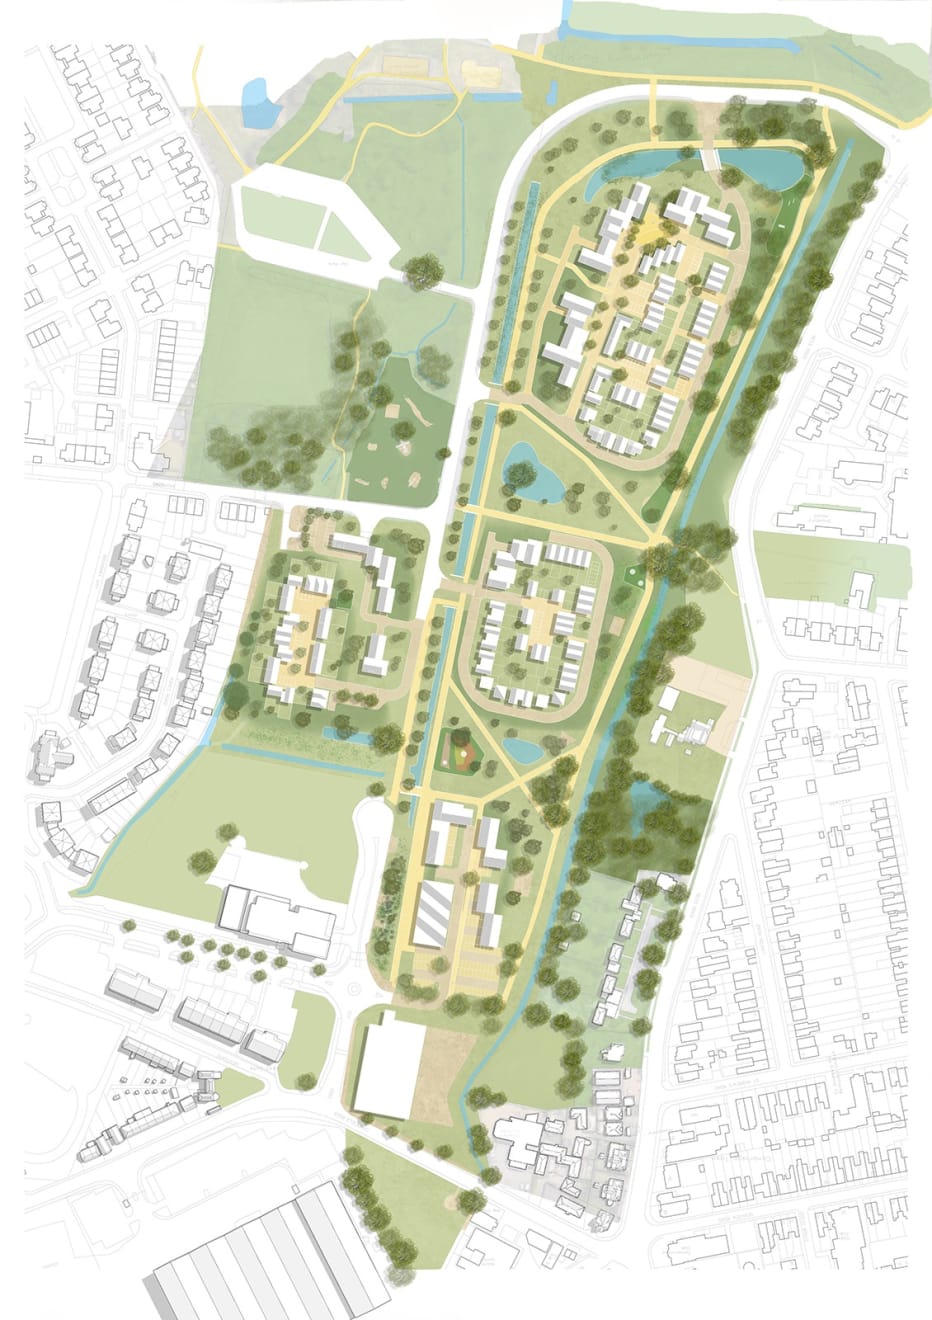 Garrison Gardens, Garrison Gardens Location Plan, 2020